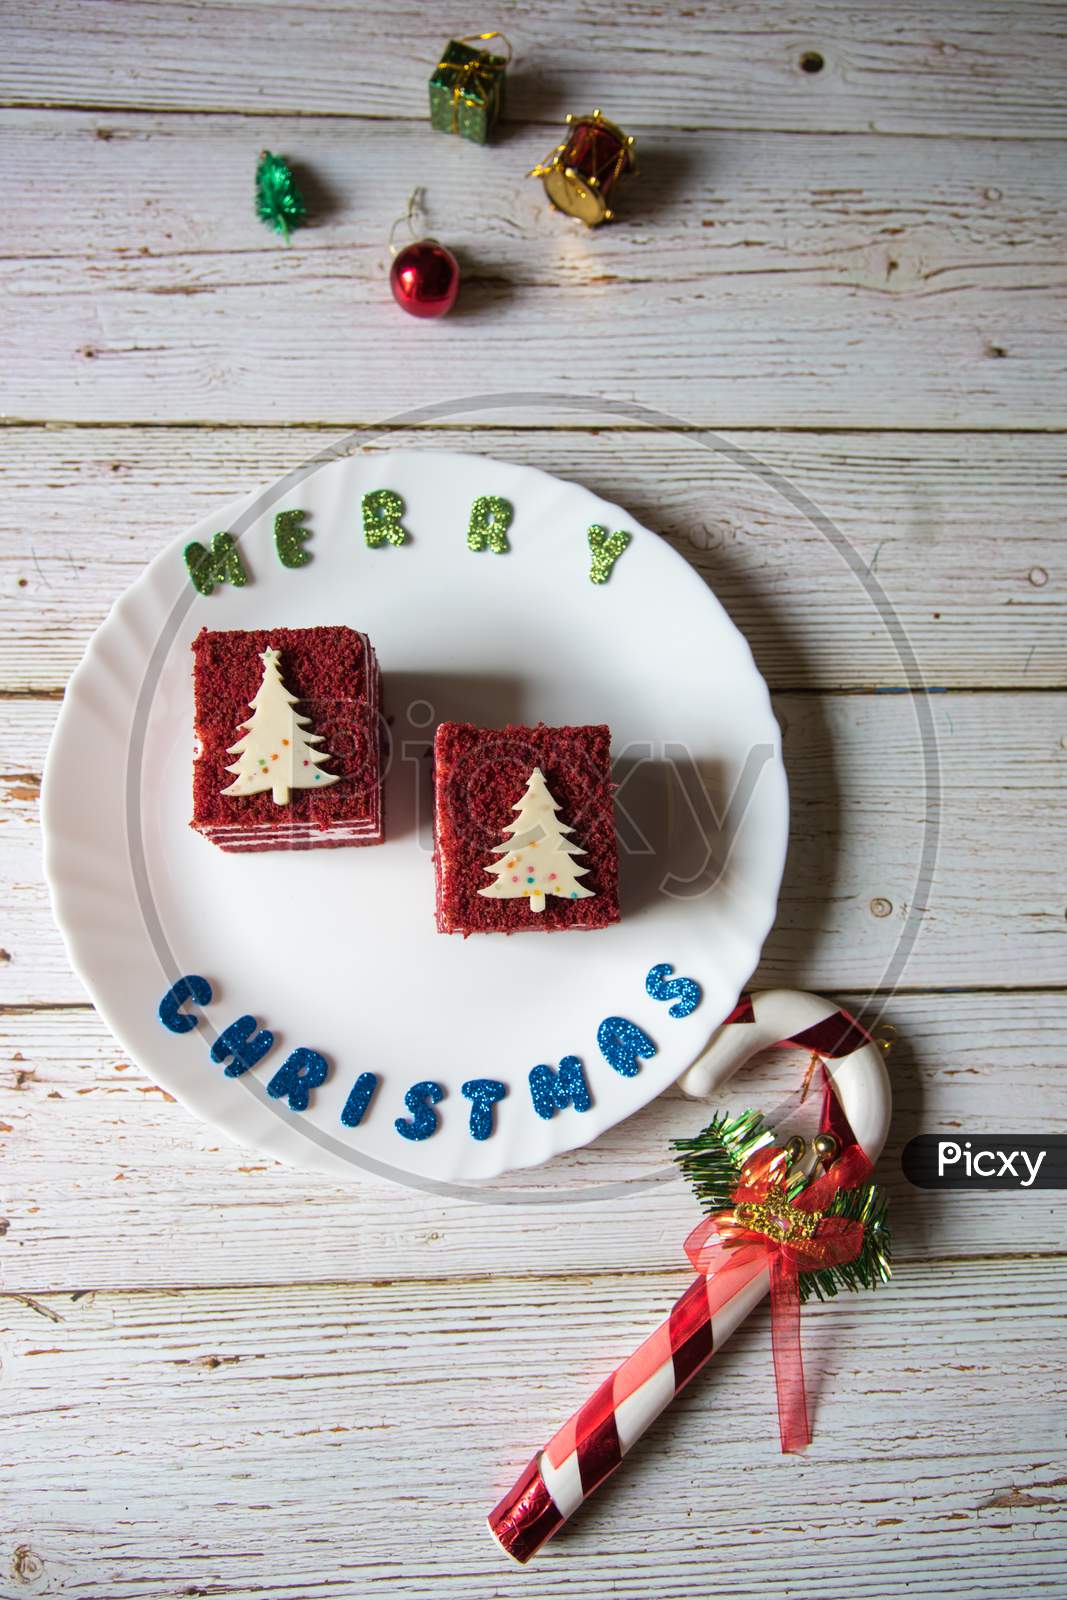 Merry Christmas greetings and red velvet cake